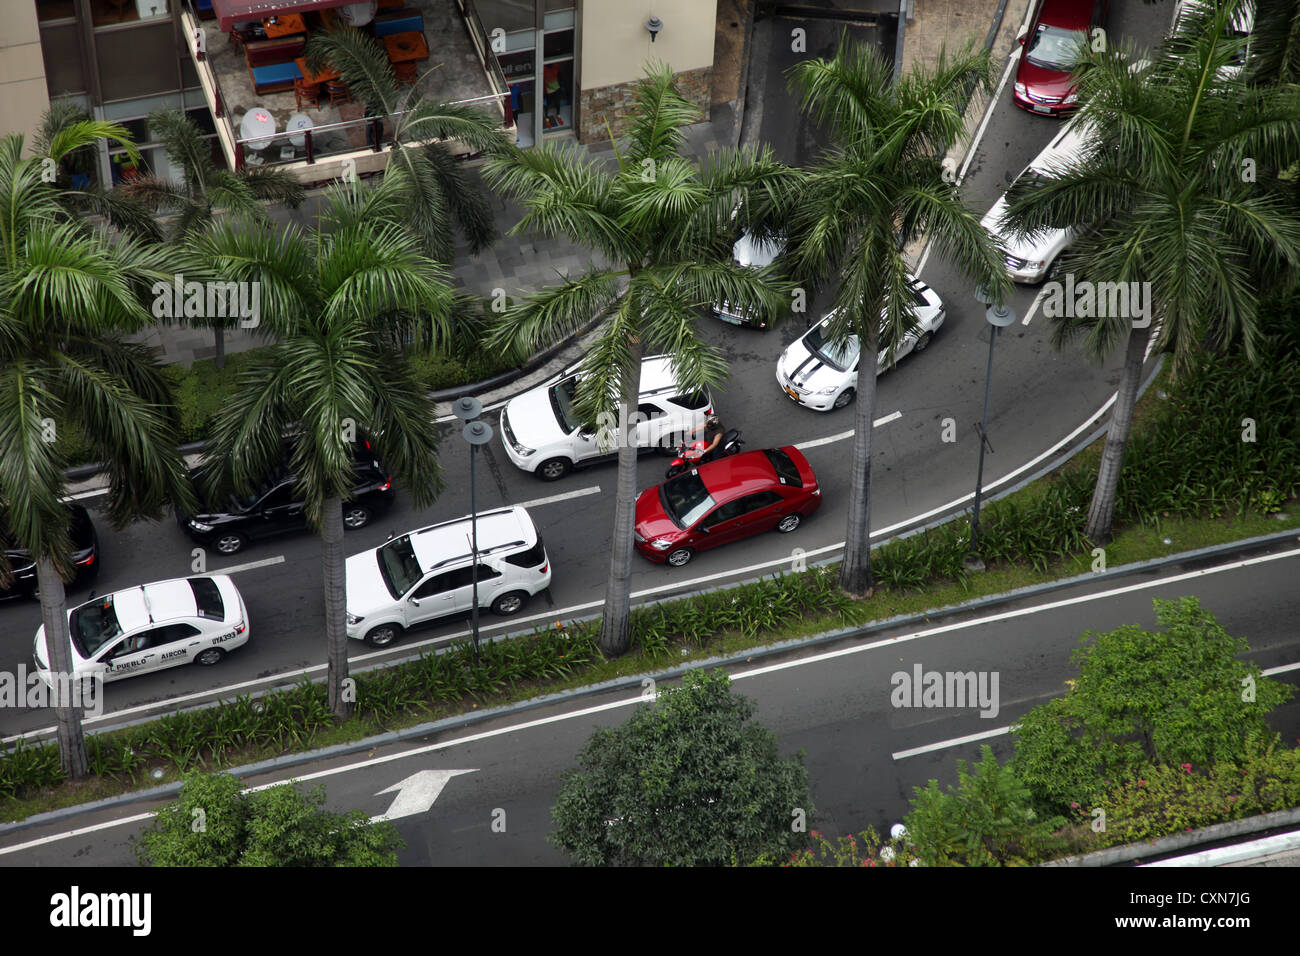 C'est une photo Vue de dessus d'un embouteillage dans les rues de Manille, aux Philippines, en Asie. Les voitures sont coincés près de la paume Banque D'Images